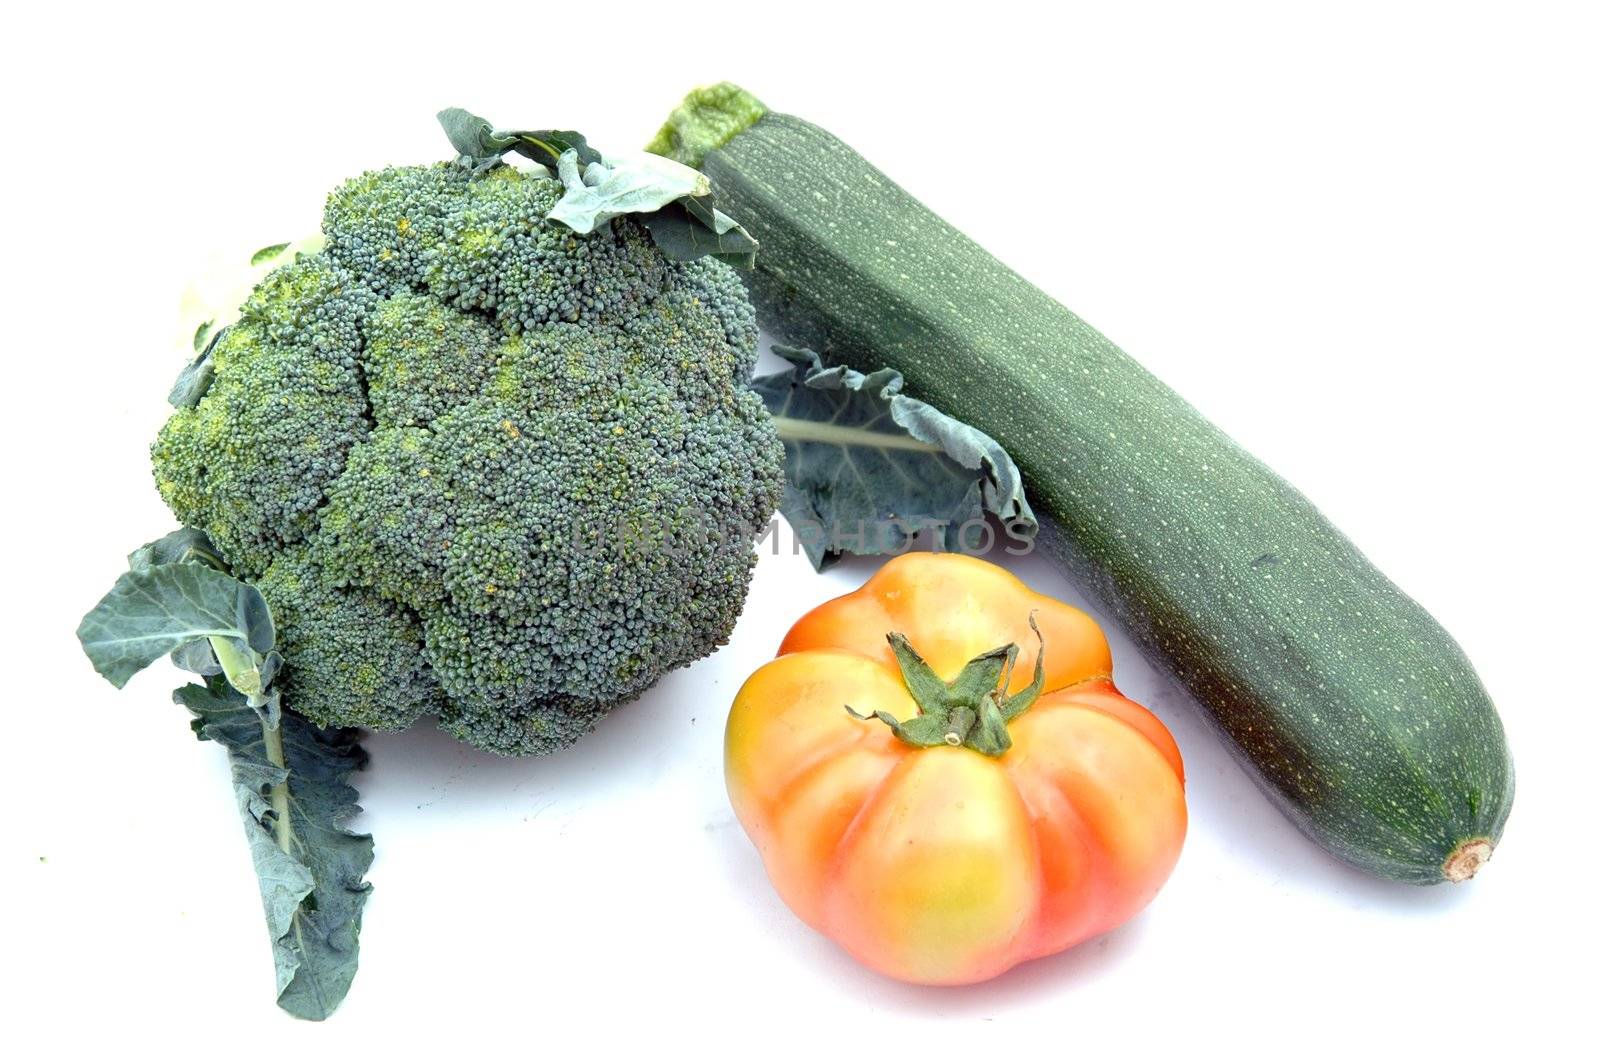 courgette, tomato and broccolis